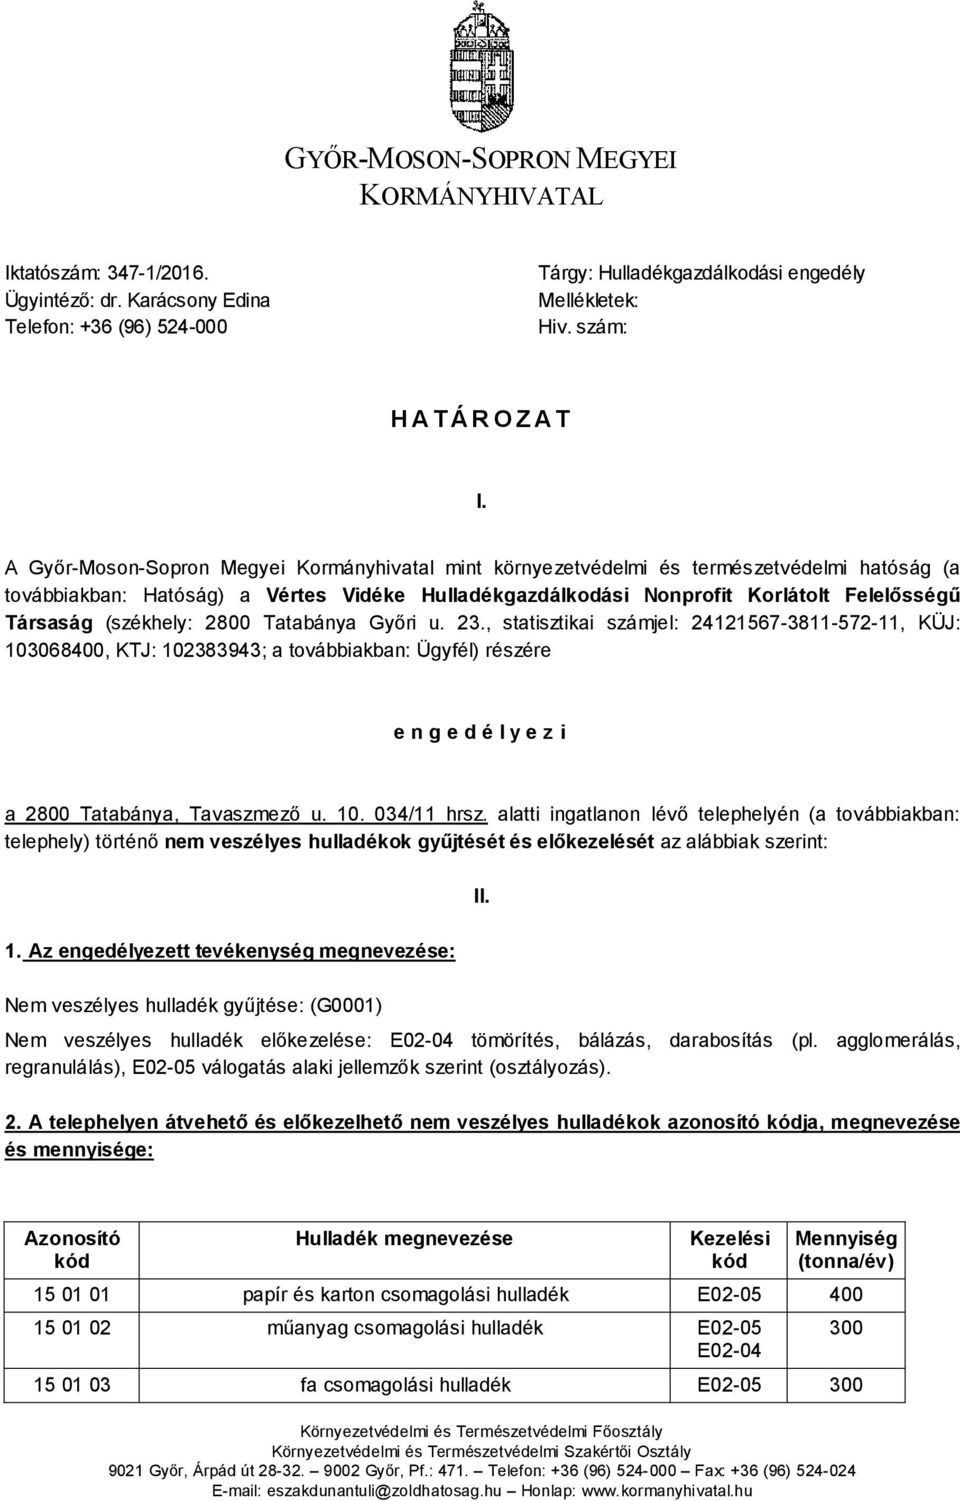 A Győr-Moson-Sopron Megyei Kormányhivatal mint környezetvédelmi és természetvédelmi hatóság (a továbbiakban: Hatóság) a Vértes Vidéke Hulladékgazdálkodási Nonprofit Korlátolt Felelősségű Társaság